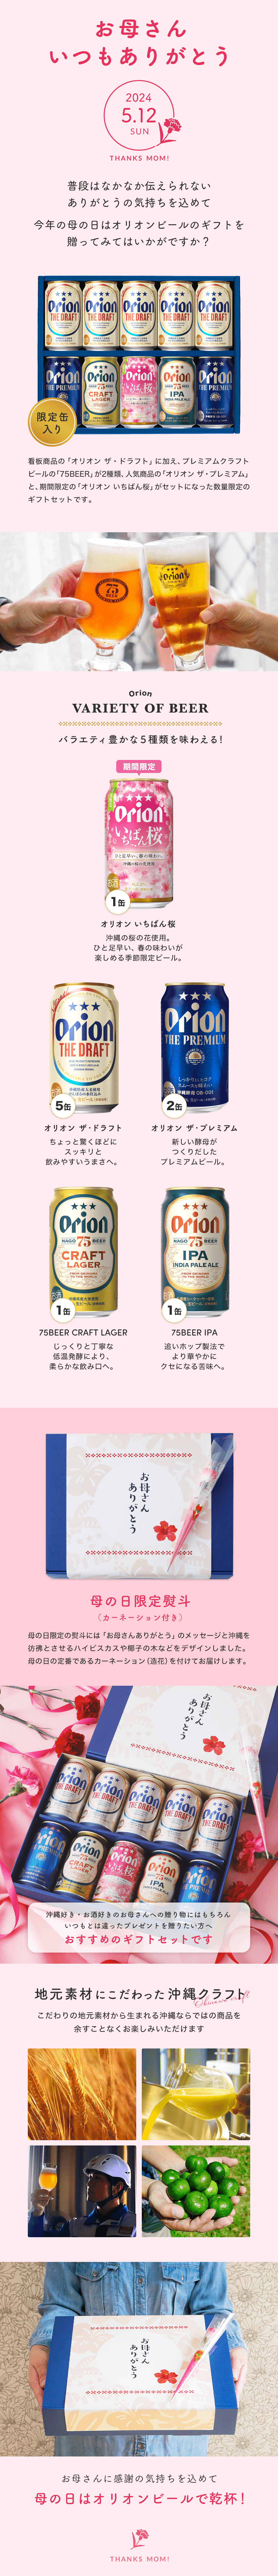 オリオン10缶ギフト